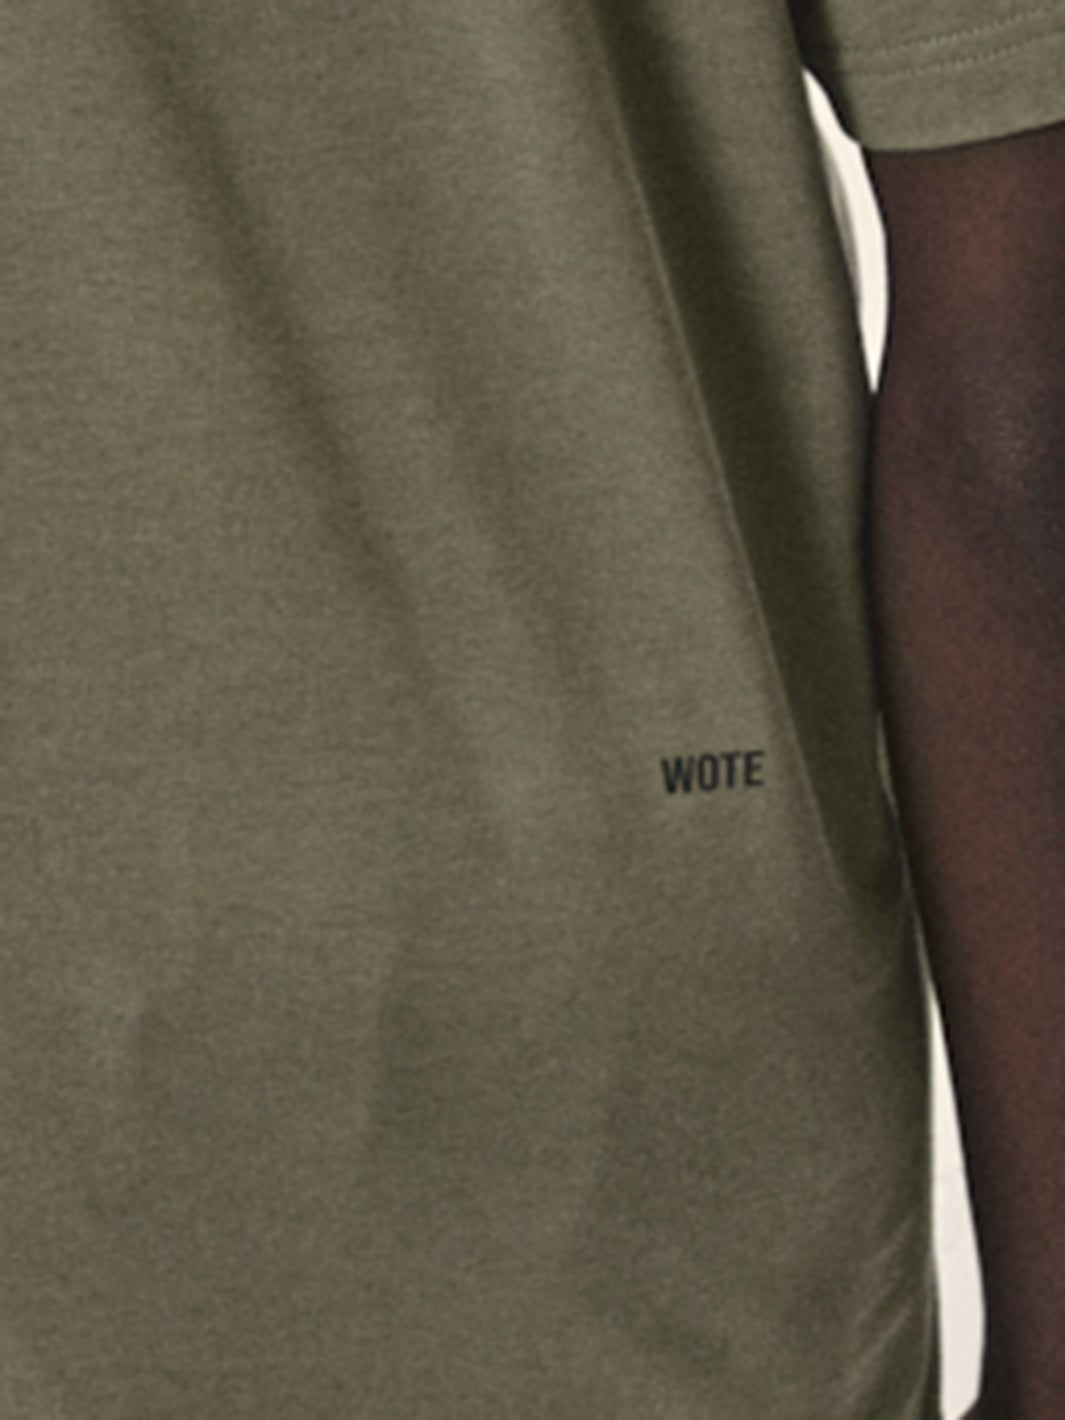 Herren T-Shirt Farbe: olive WOTE Logo Druck auf hinterer rechter Seite Bio Baumwolle fair produziert in Portugal